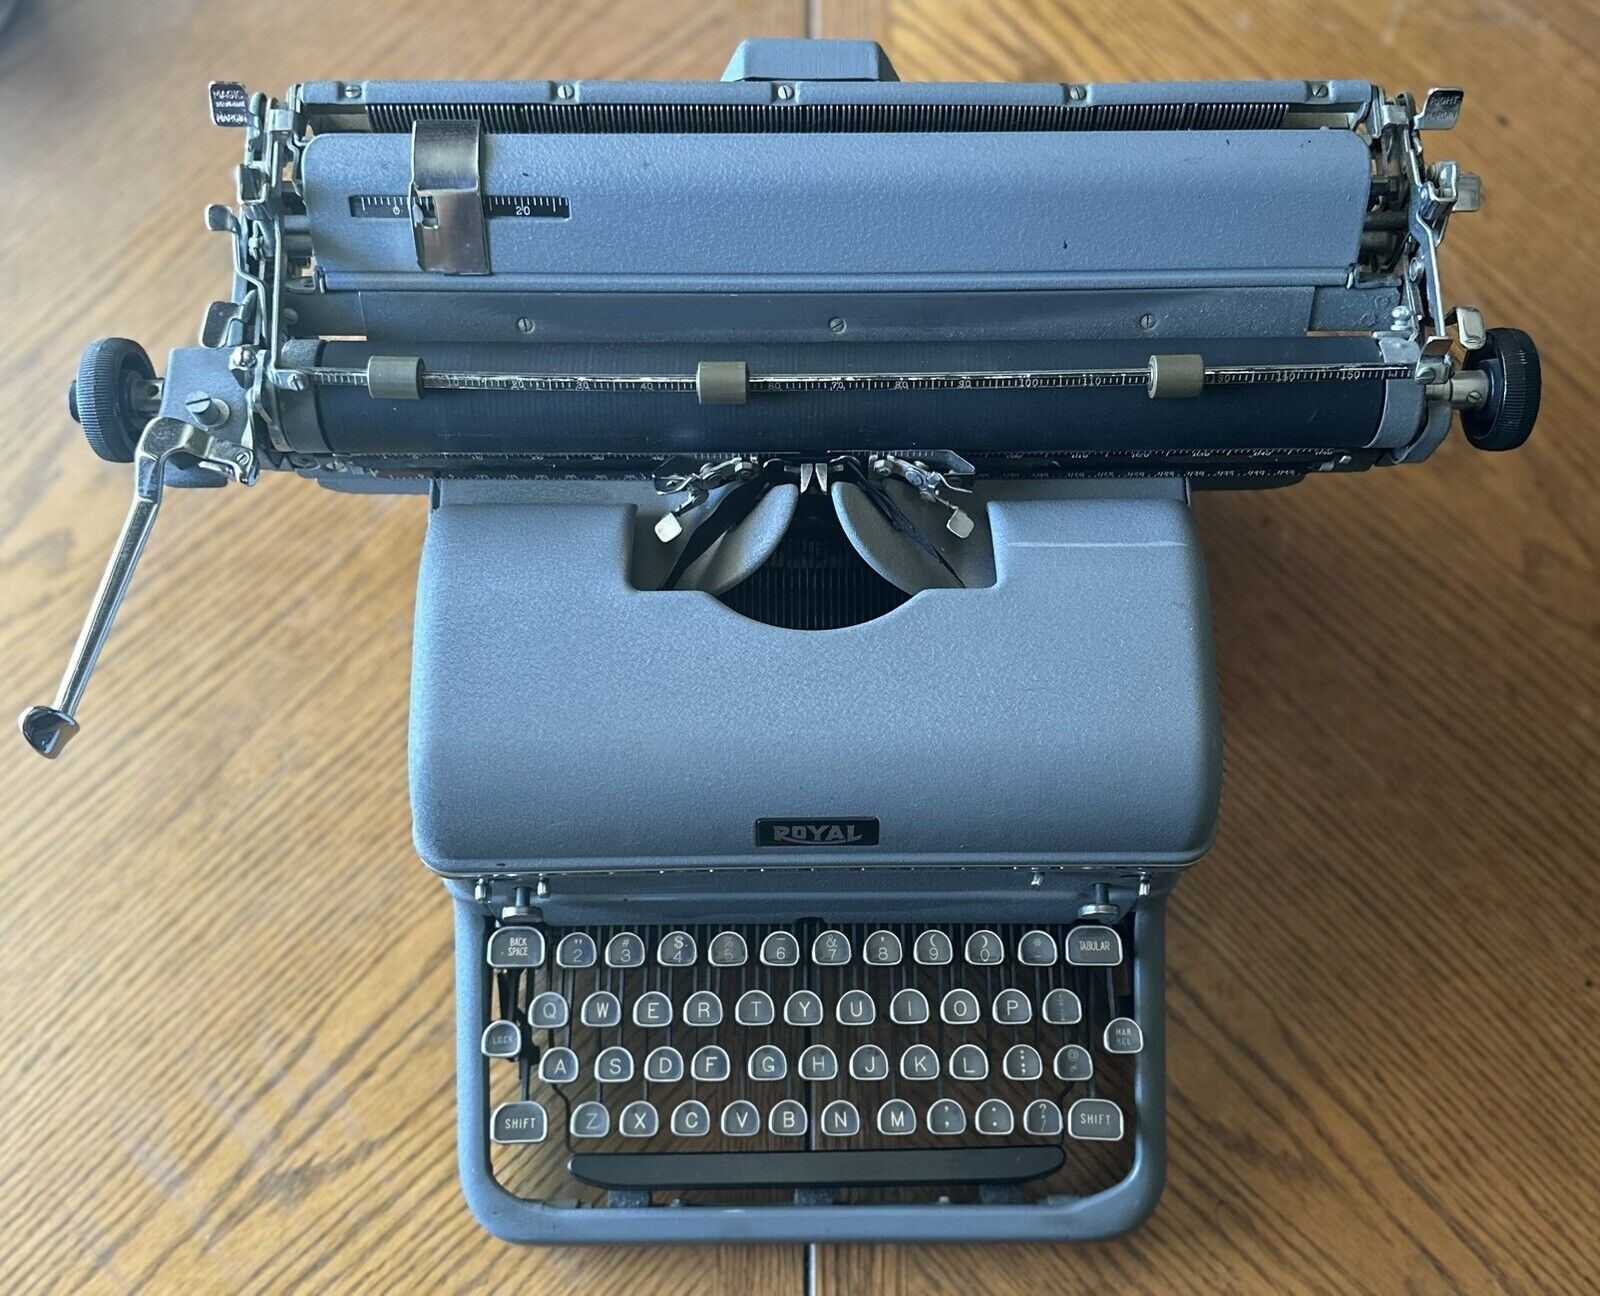 1952 Royal KMM Working Vintage Desktop Typewriter